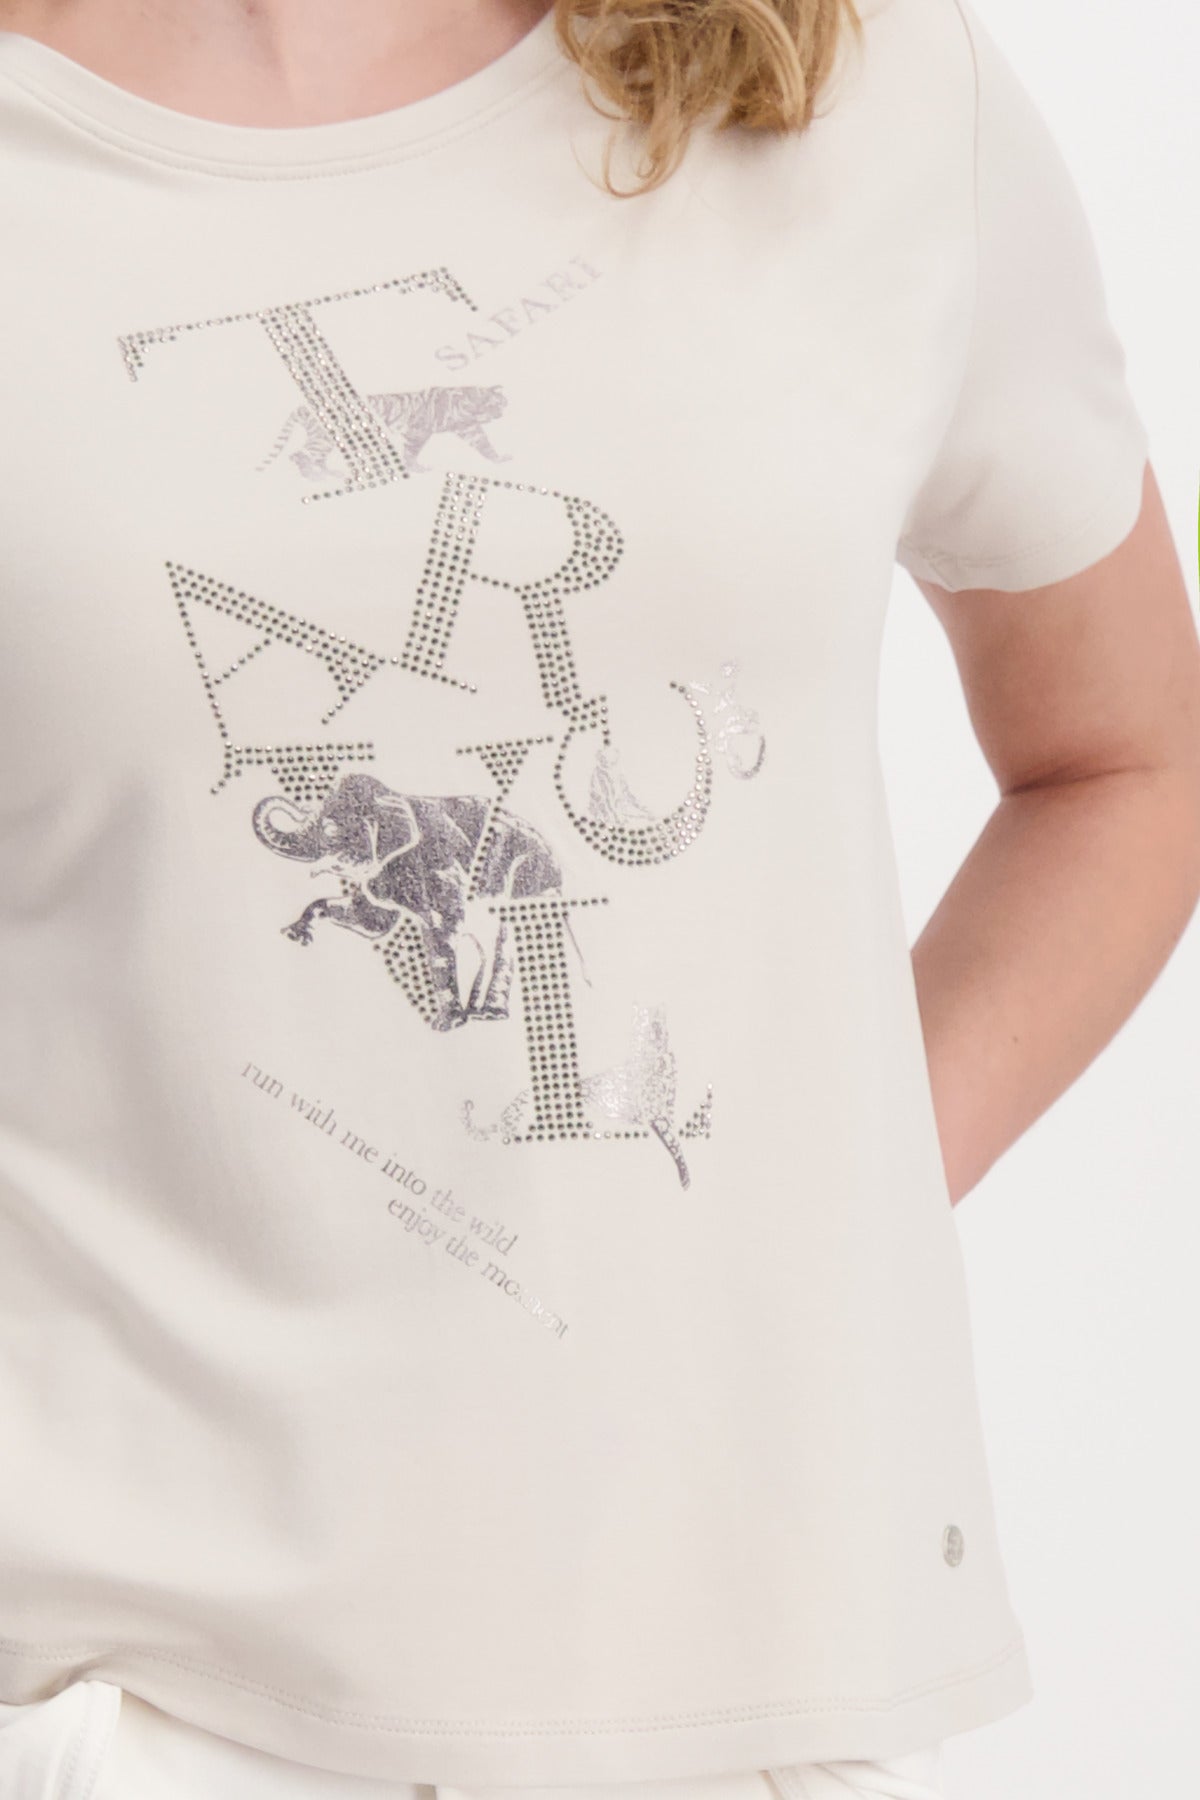 Monari Damen T-Shirt  mit Glanz-Print und Strass Schrift